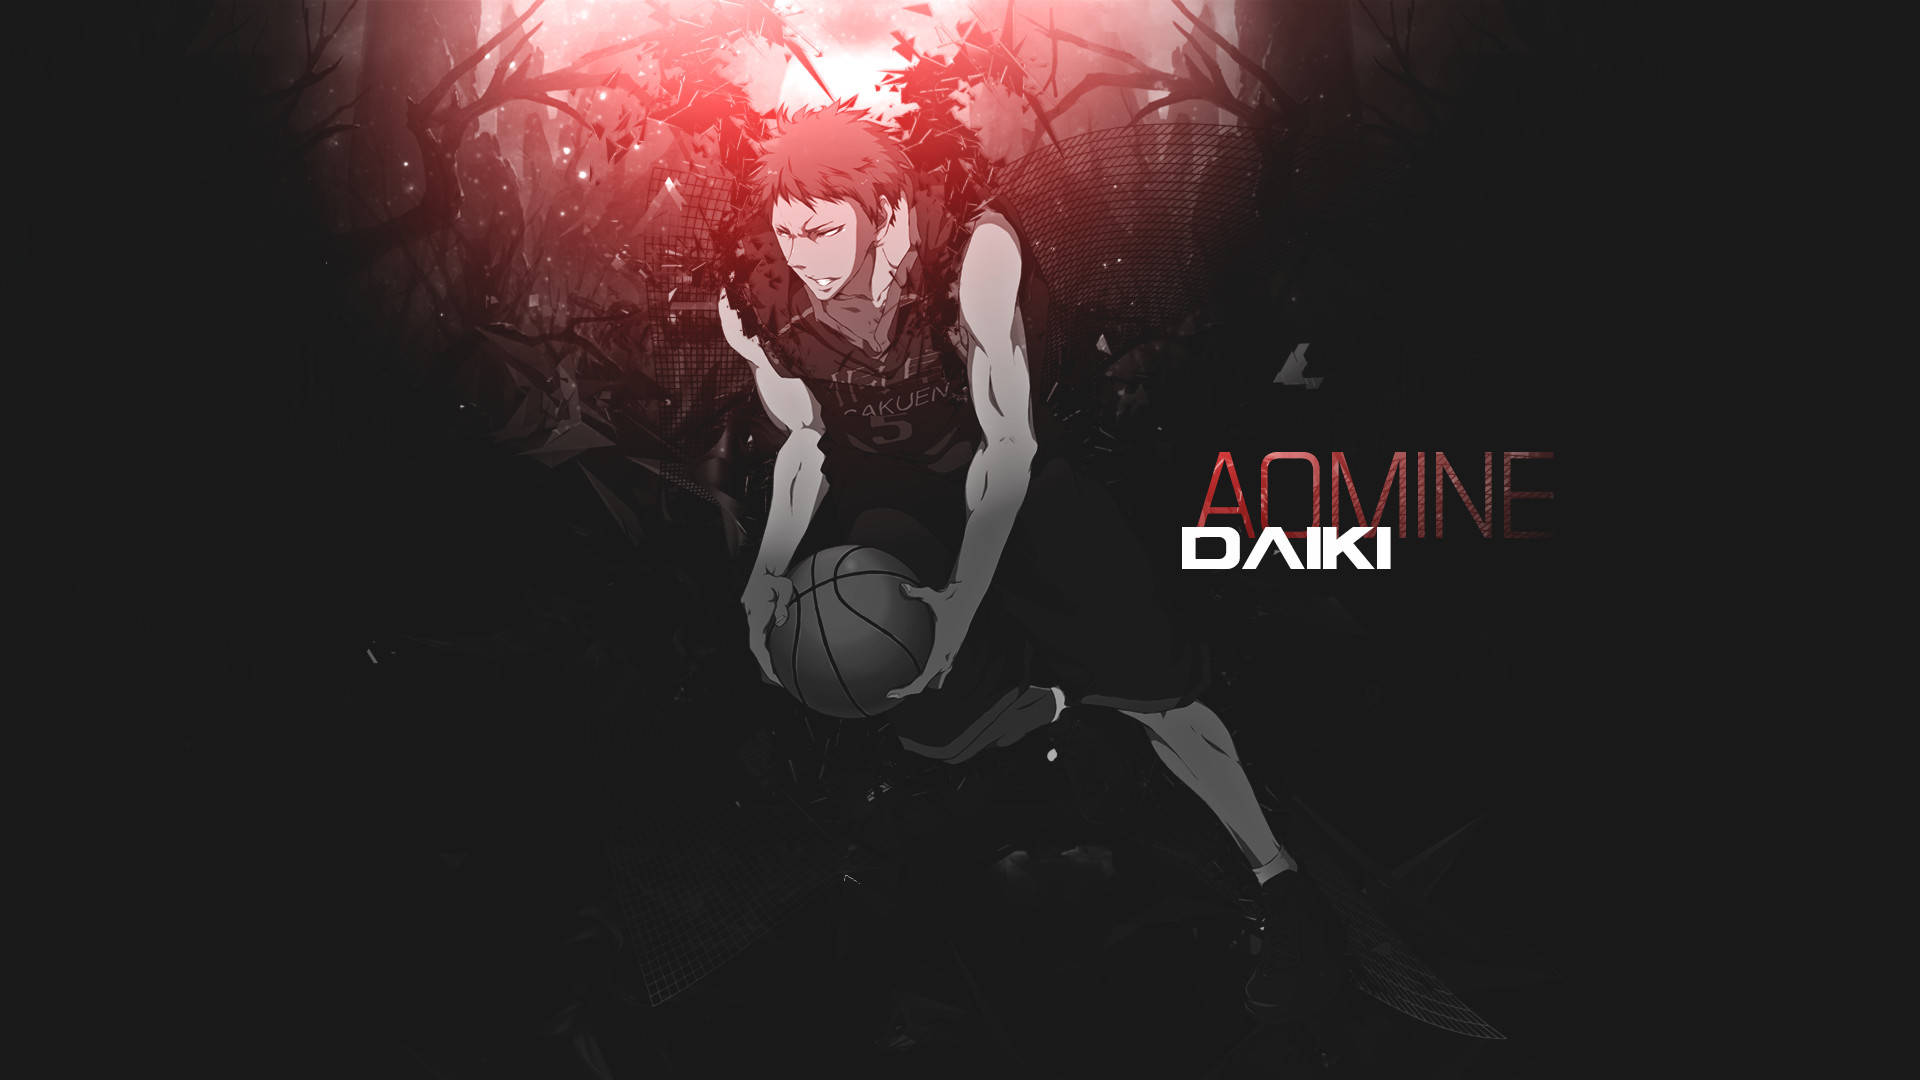 Aomine Daiki From Kuroko's Basketball